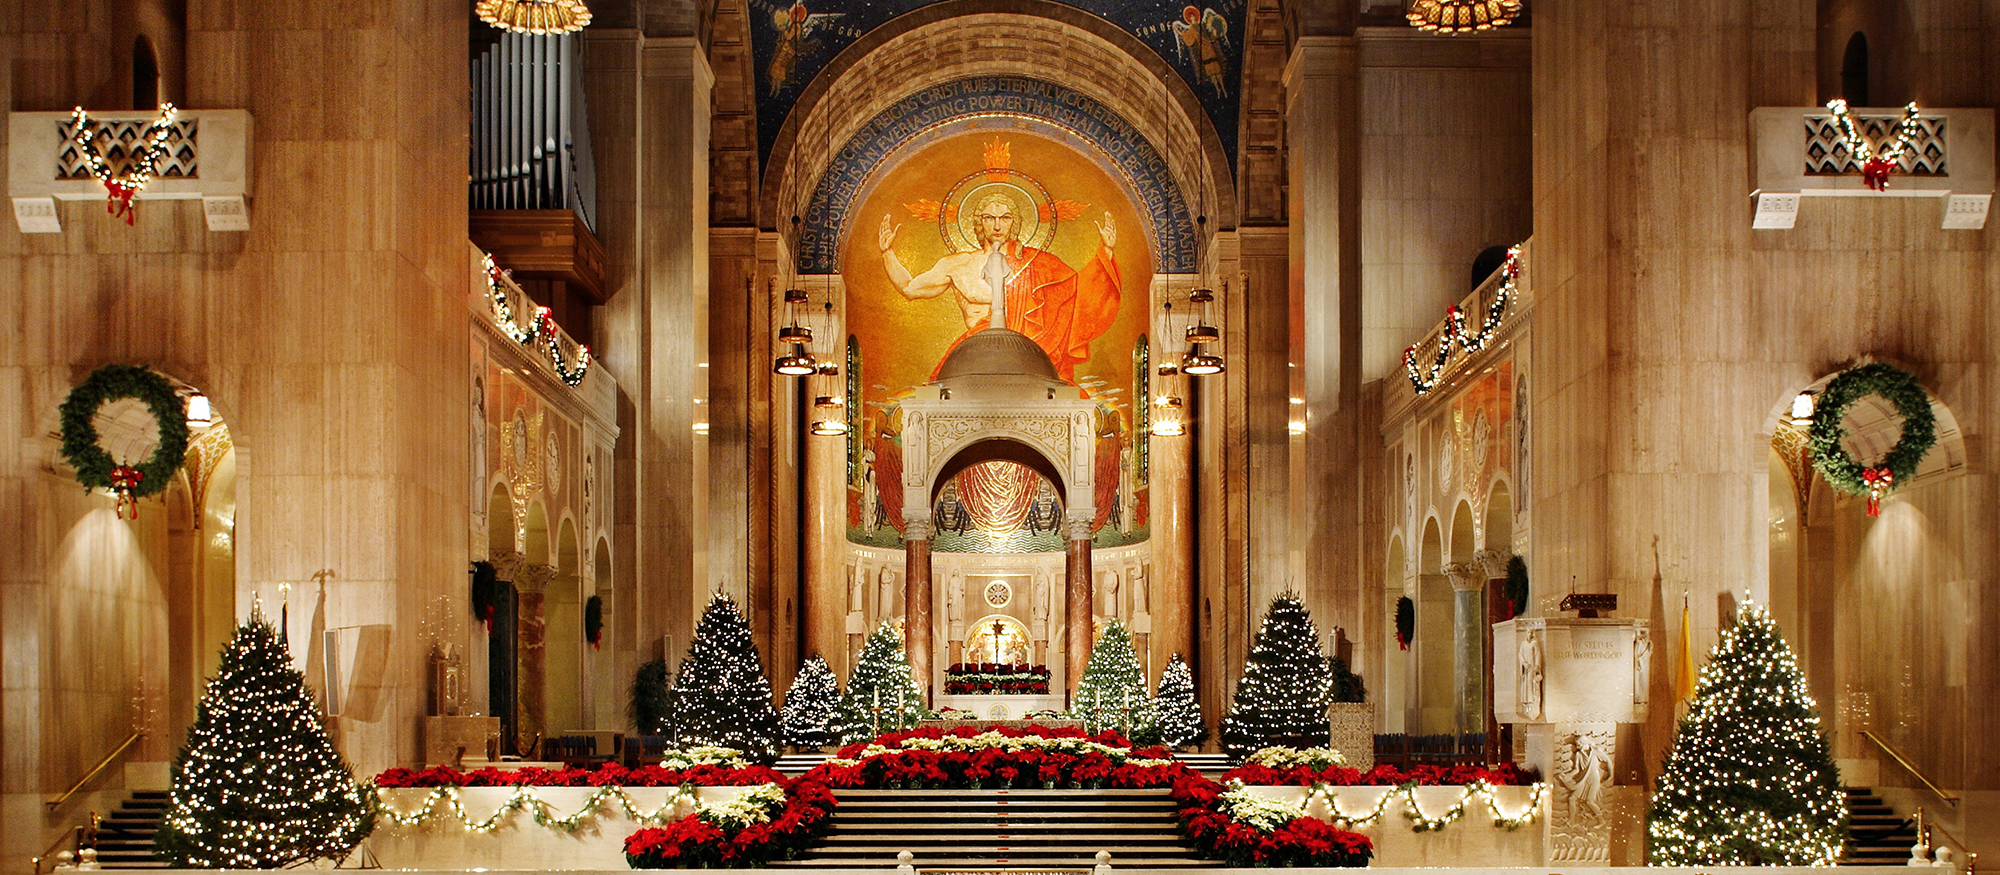 Chancel and Altar - Christmas